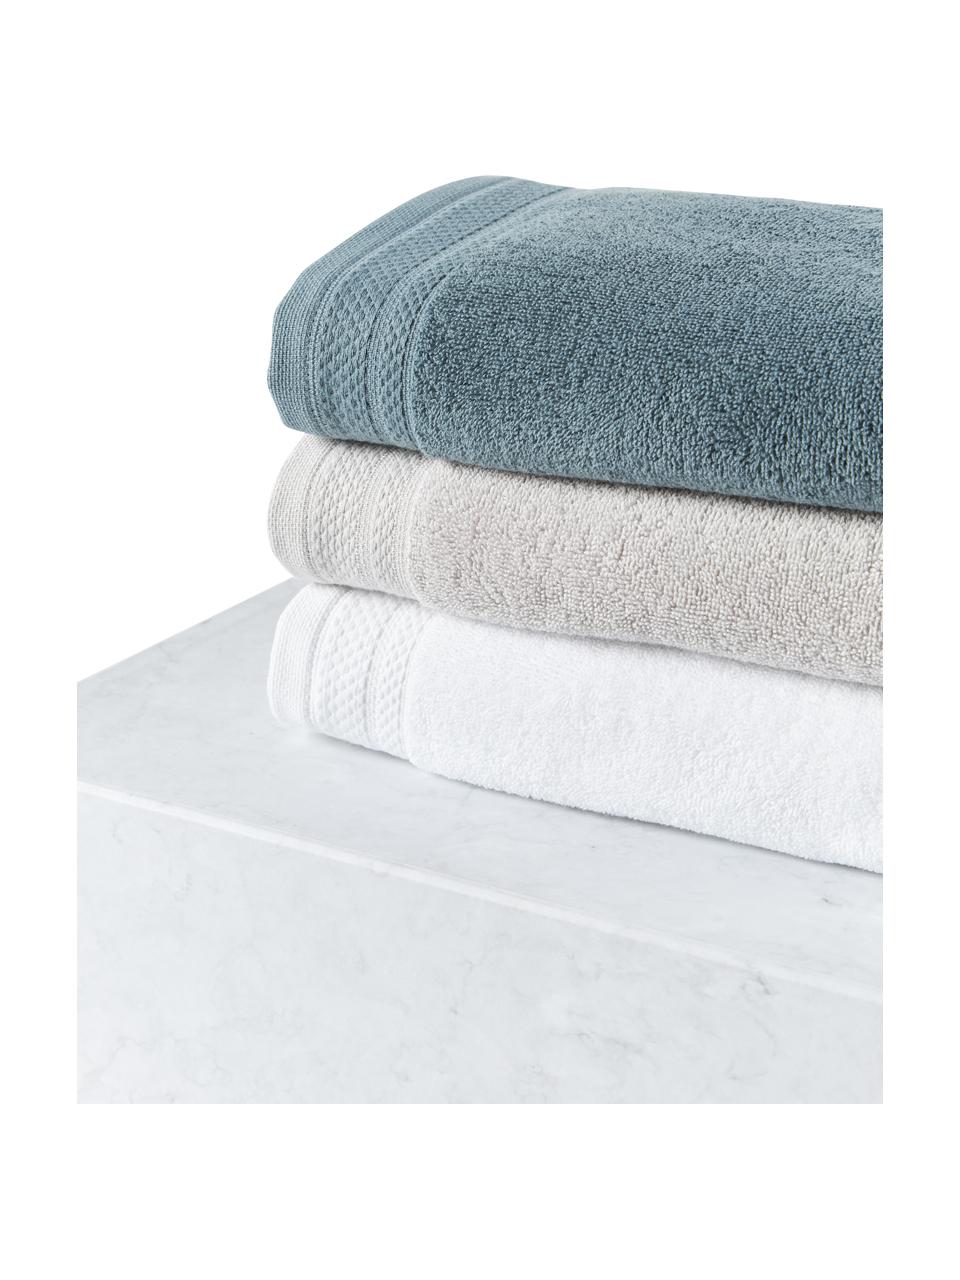 Súprava uterákov z organickej bavlny Premium, 4 diely, Svetlosivá, Súprava s rôznymi veľkosťami